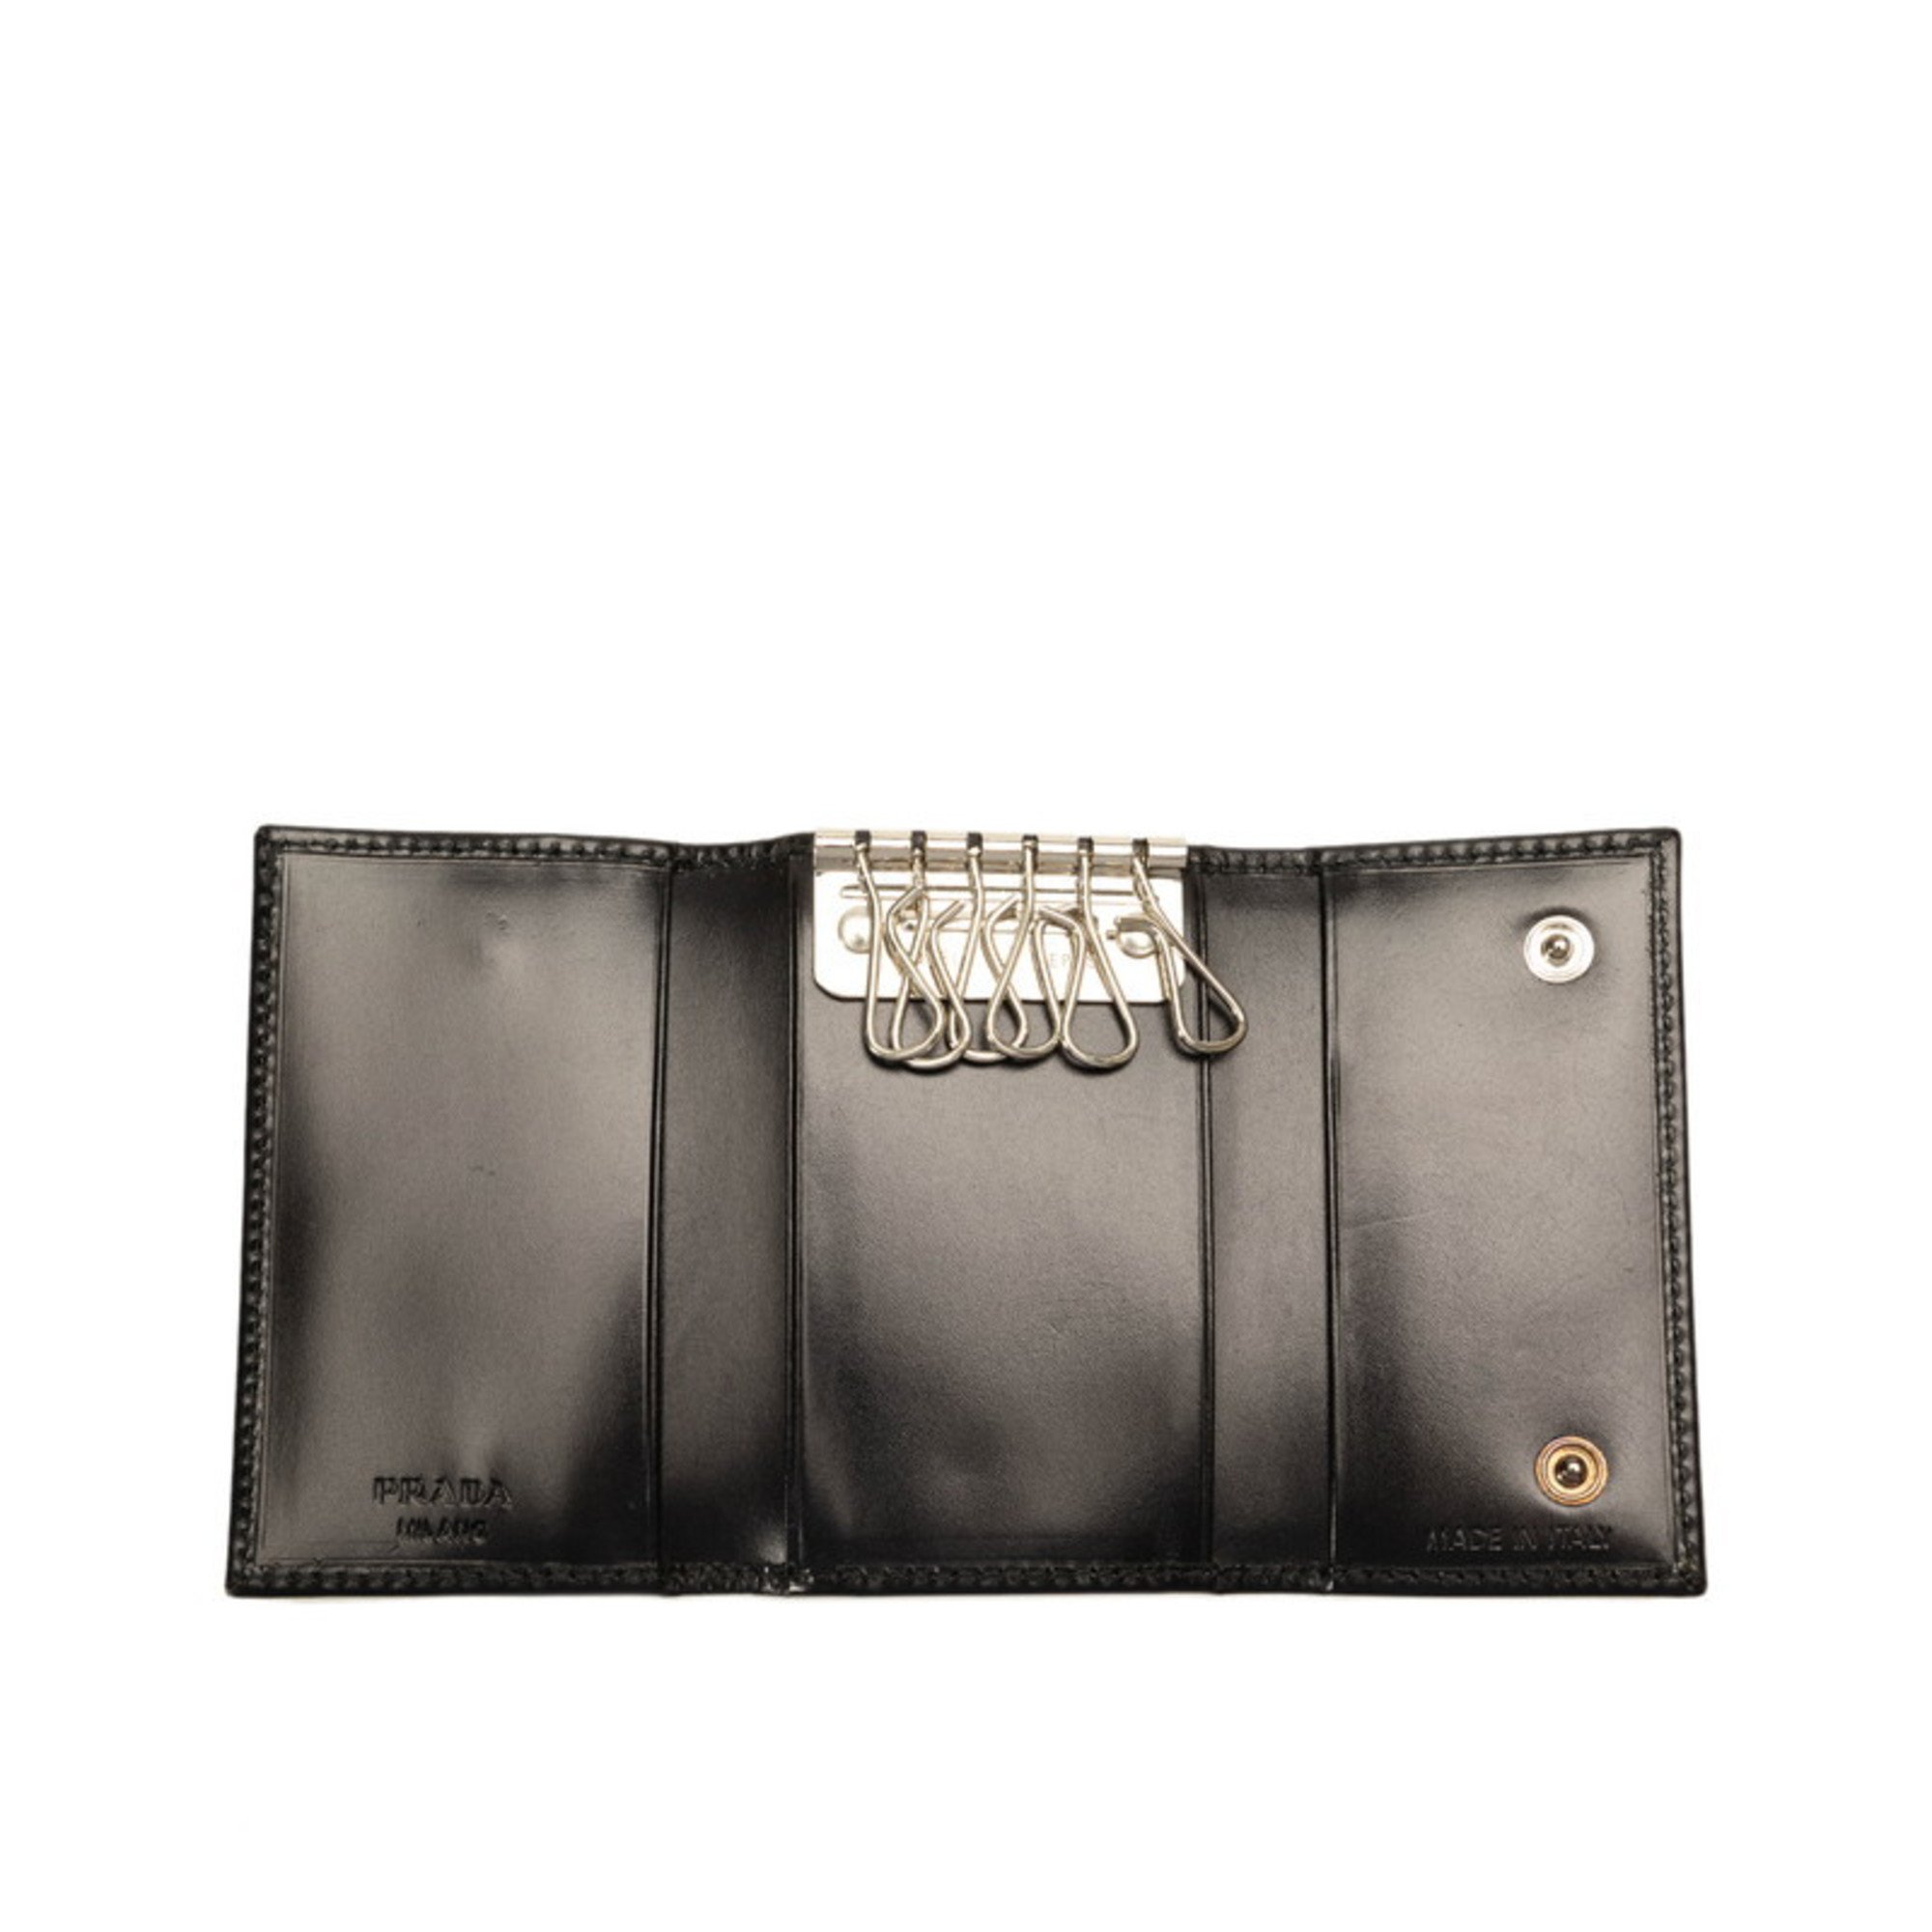 Prada 6 key case 1M0222 black leather ladies PRADA